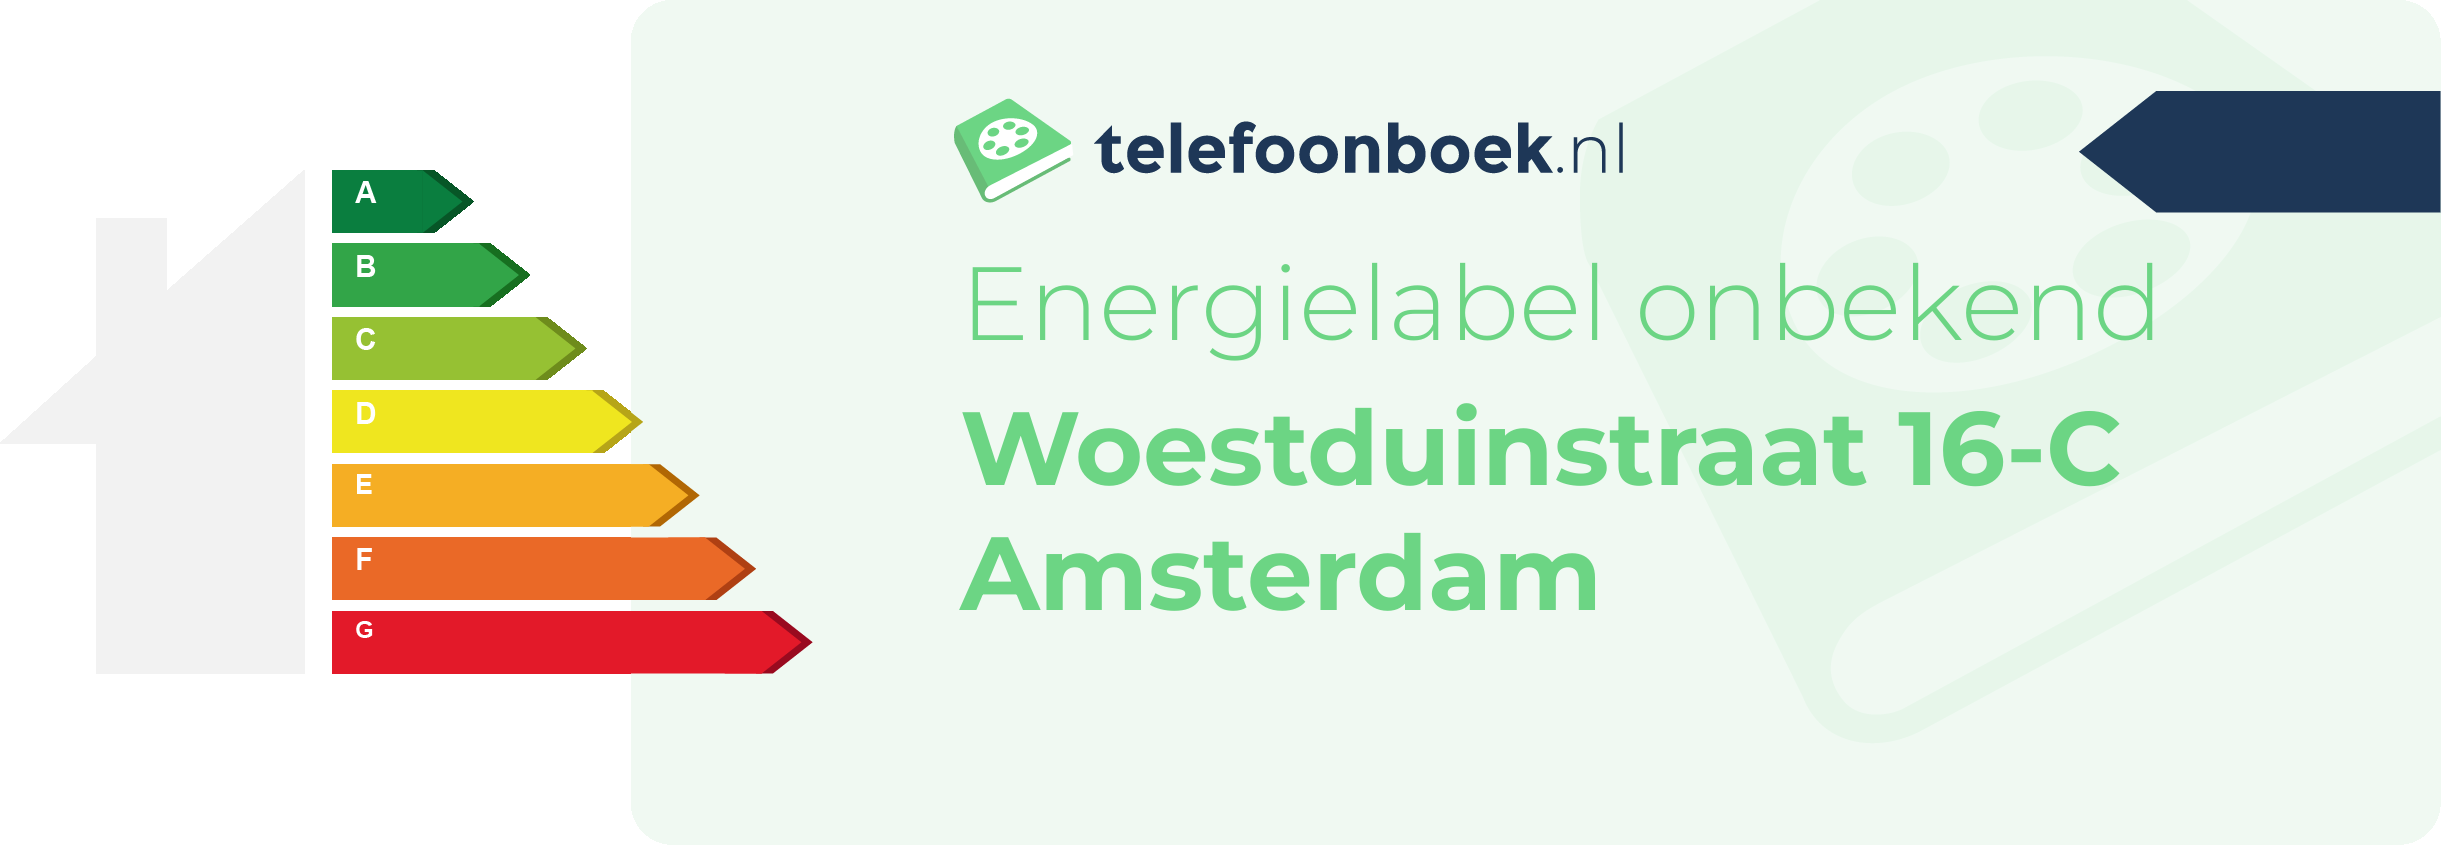 Energielabel Woestduinstraat 16-C Amsterdam